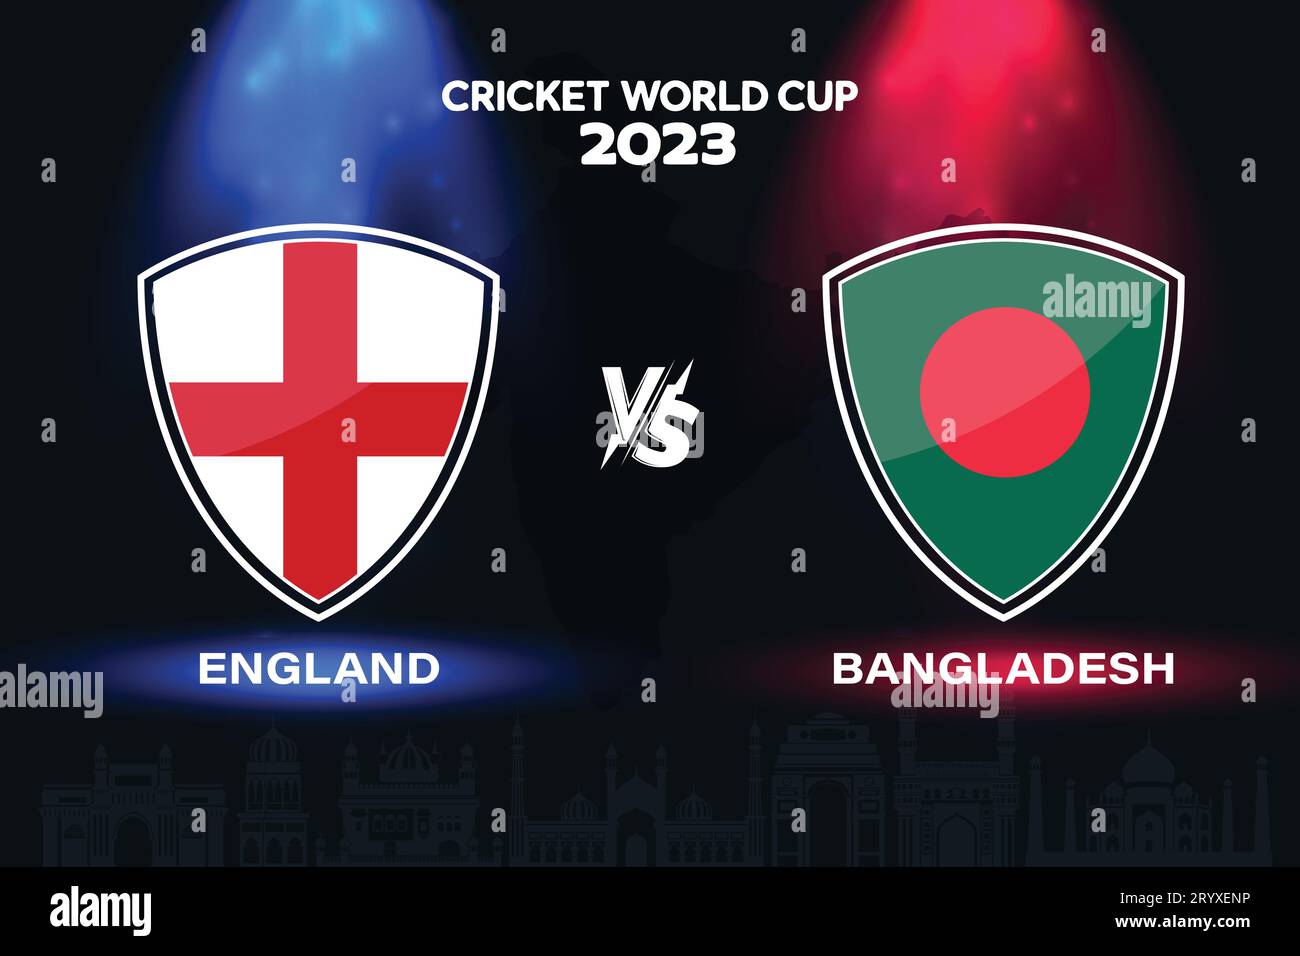 Angleterre vs Bangladesh logo de drapeau de cricket international design sur fond d'horizon indien pour la finale de la coupe du monde 2023. Vecteur EPS pour match sportif Illustration de Vecteur